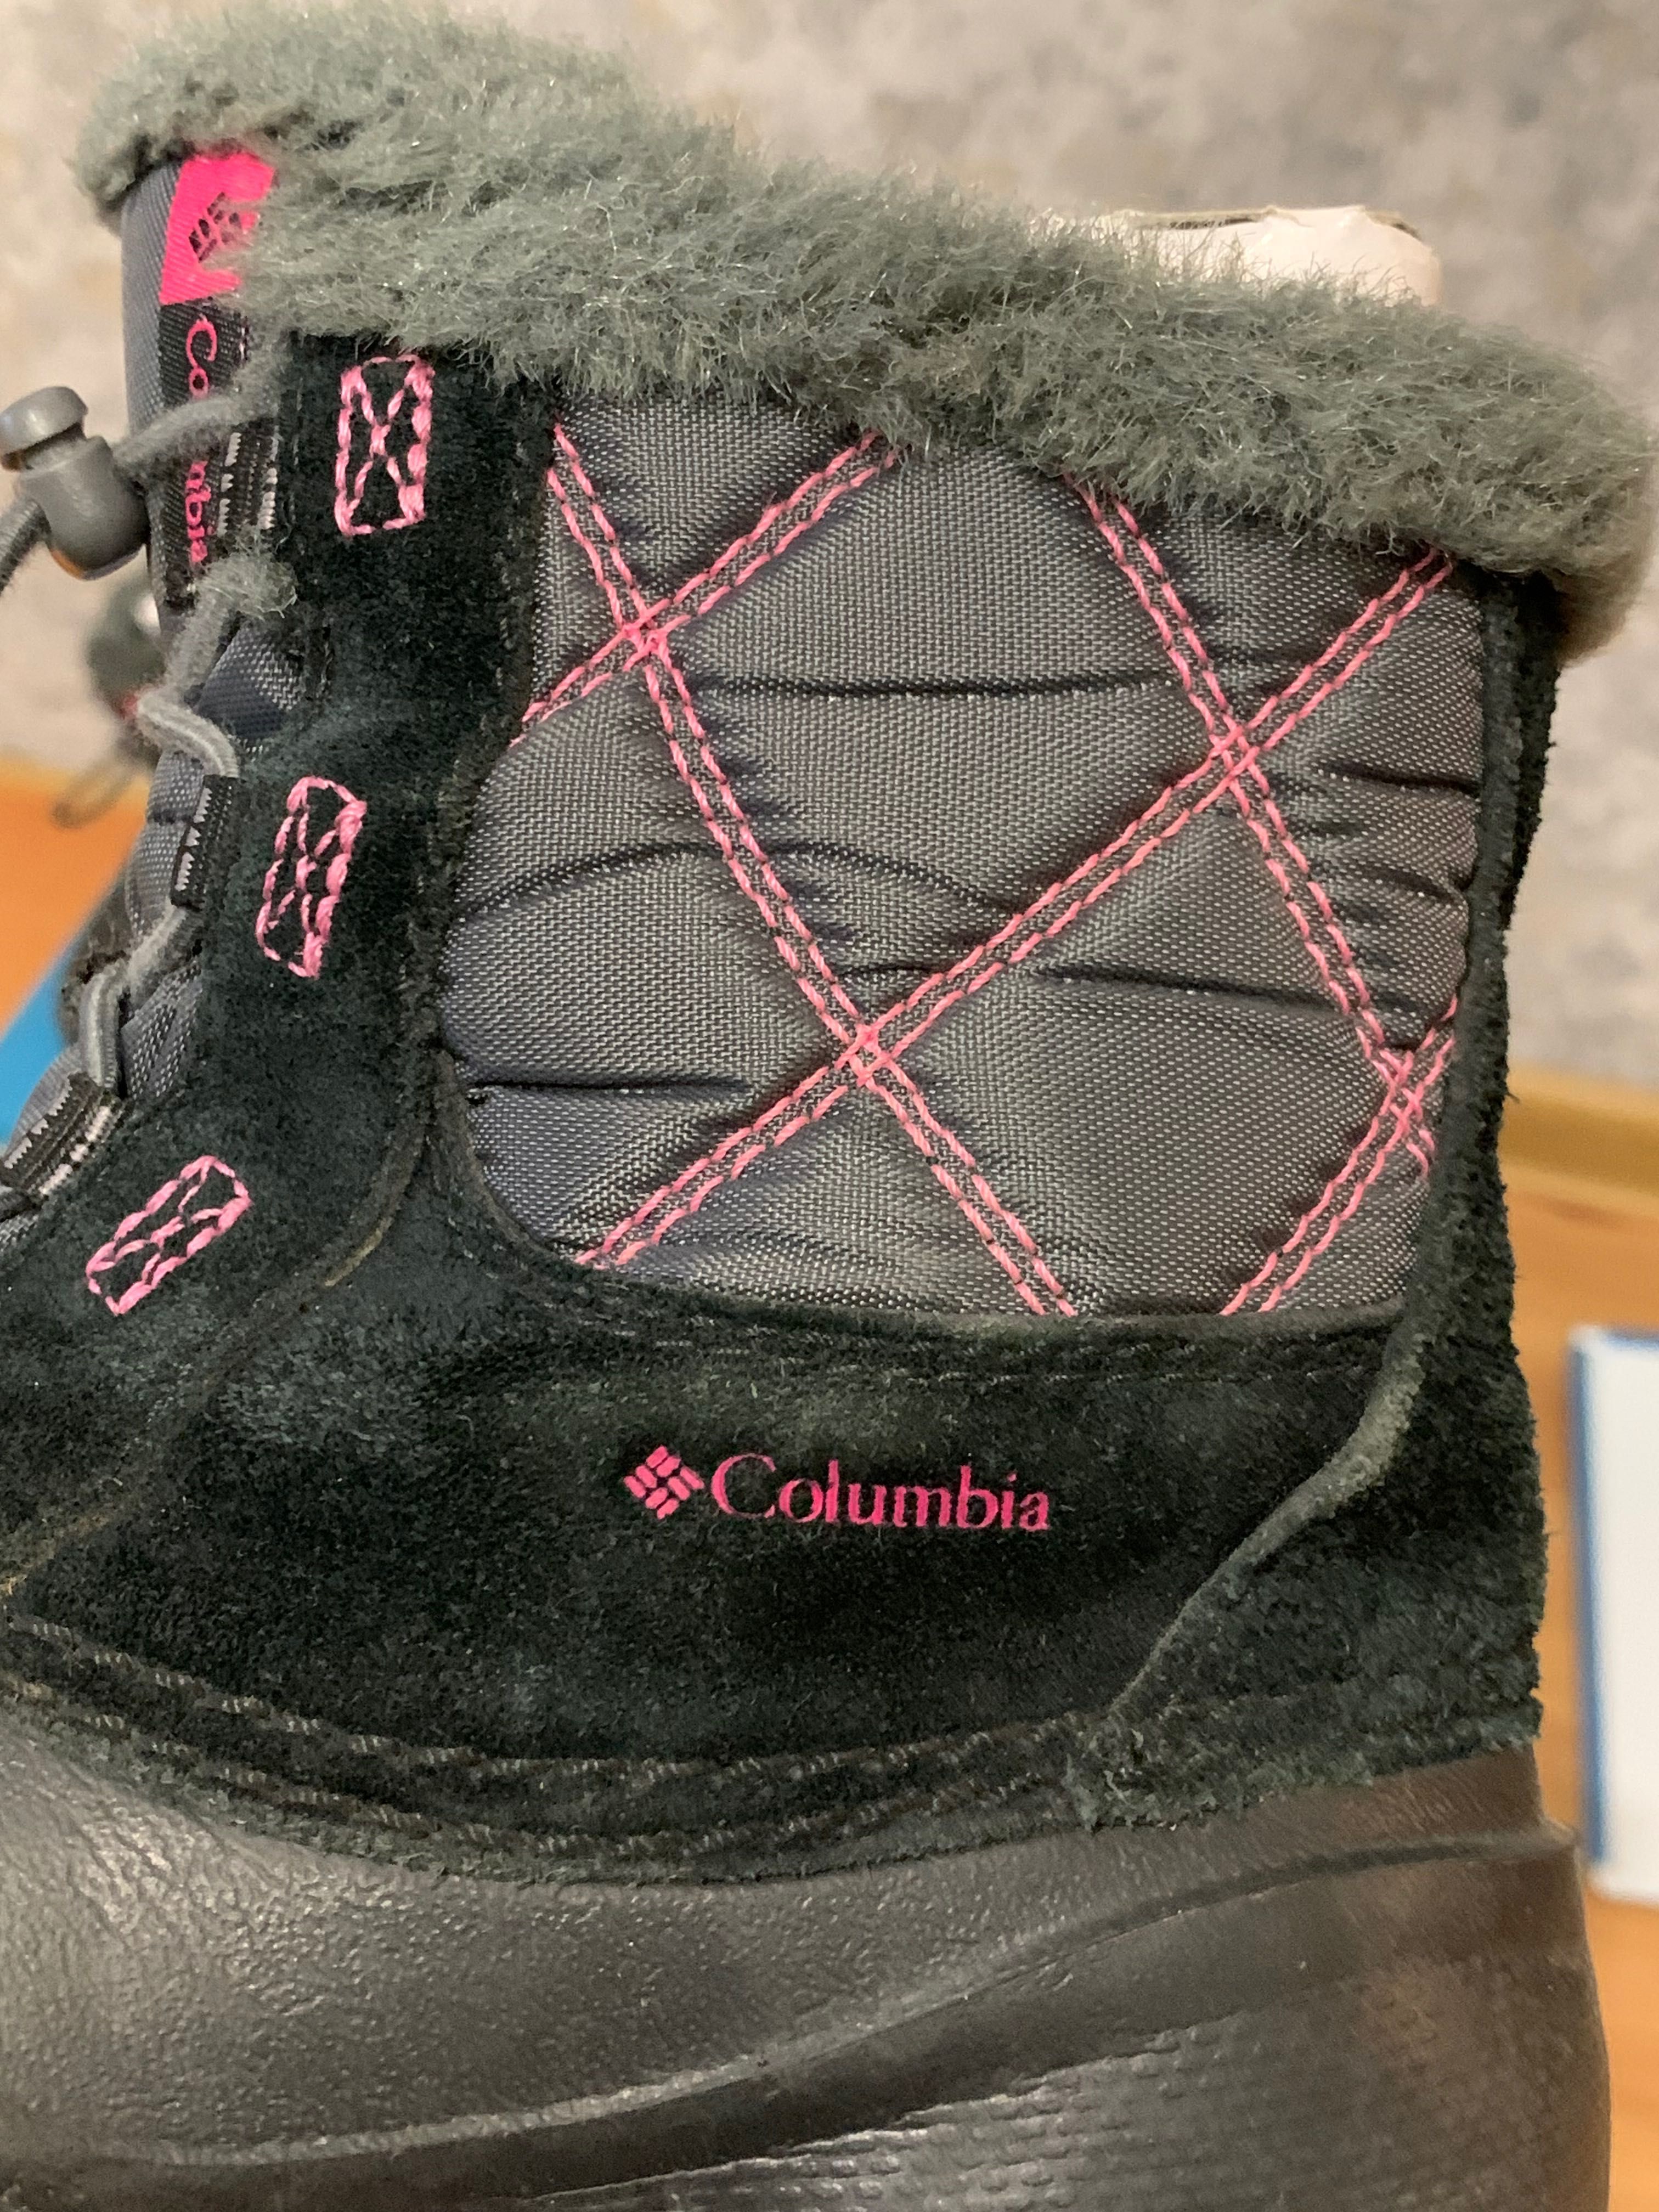 Ботинки Columbia